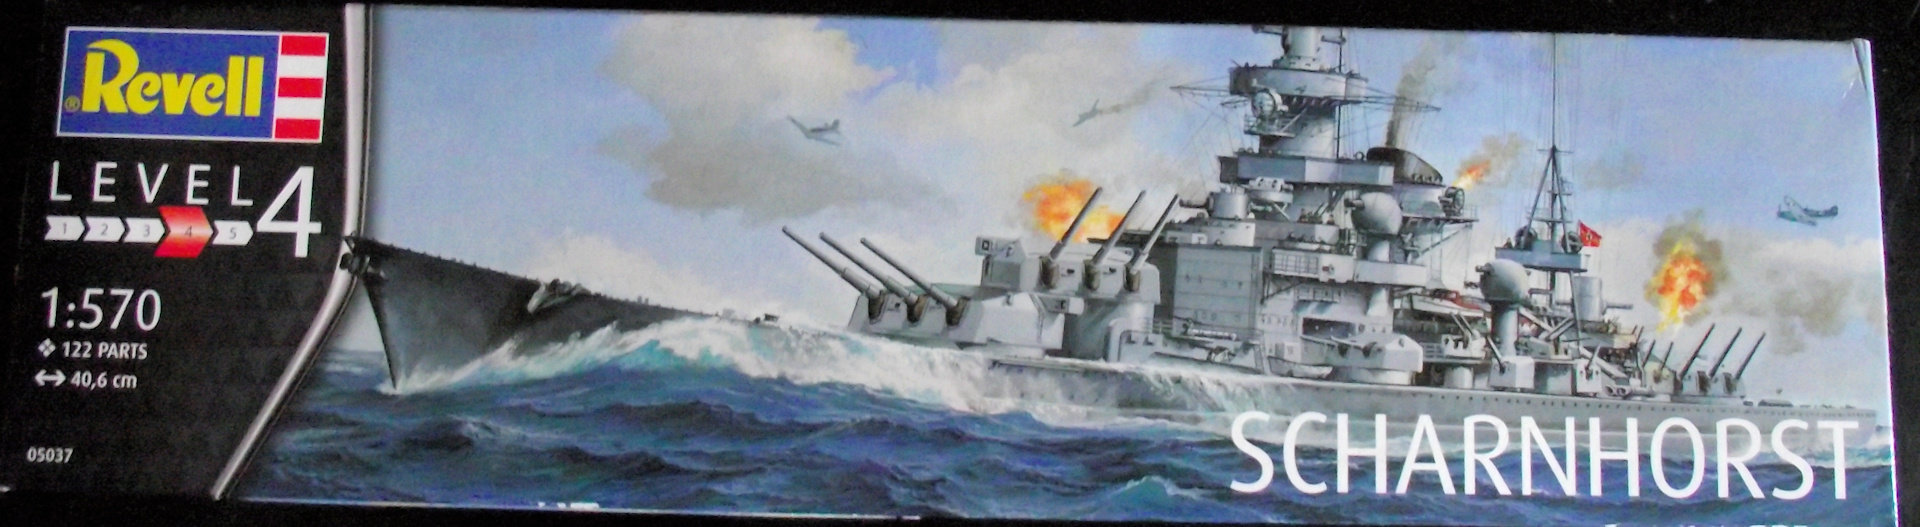 Scharnhorst Revell 1x570 2m46